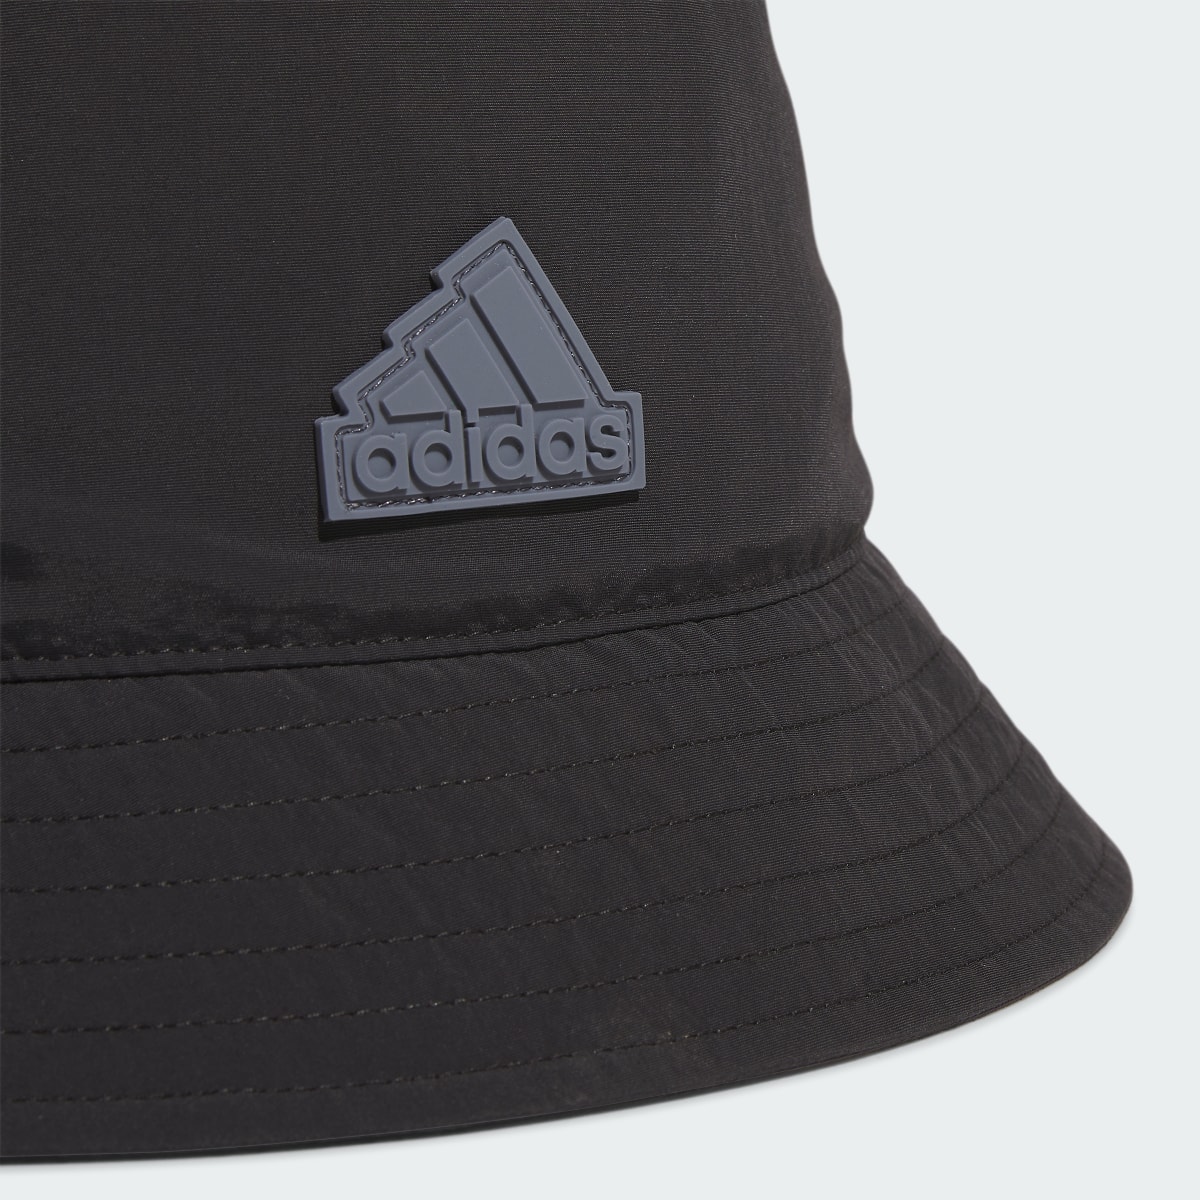 Adidas Shoreline Bucket Hat. 5